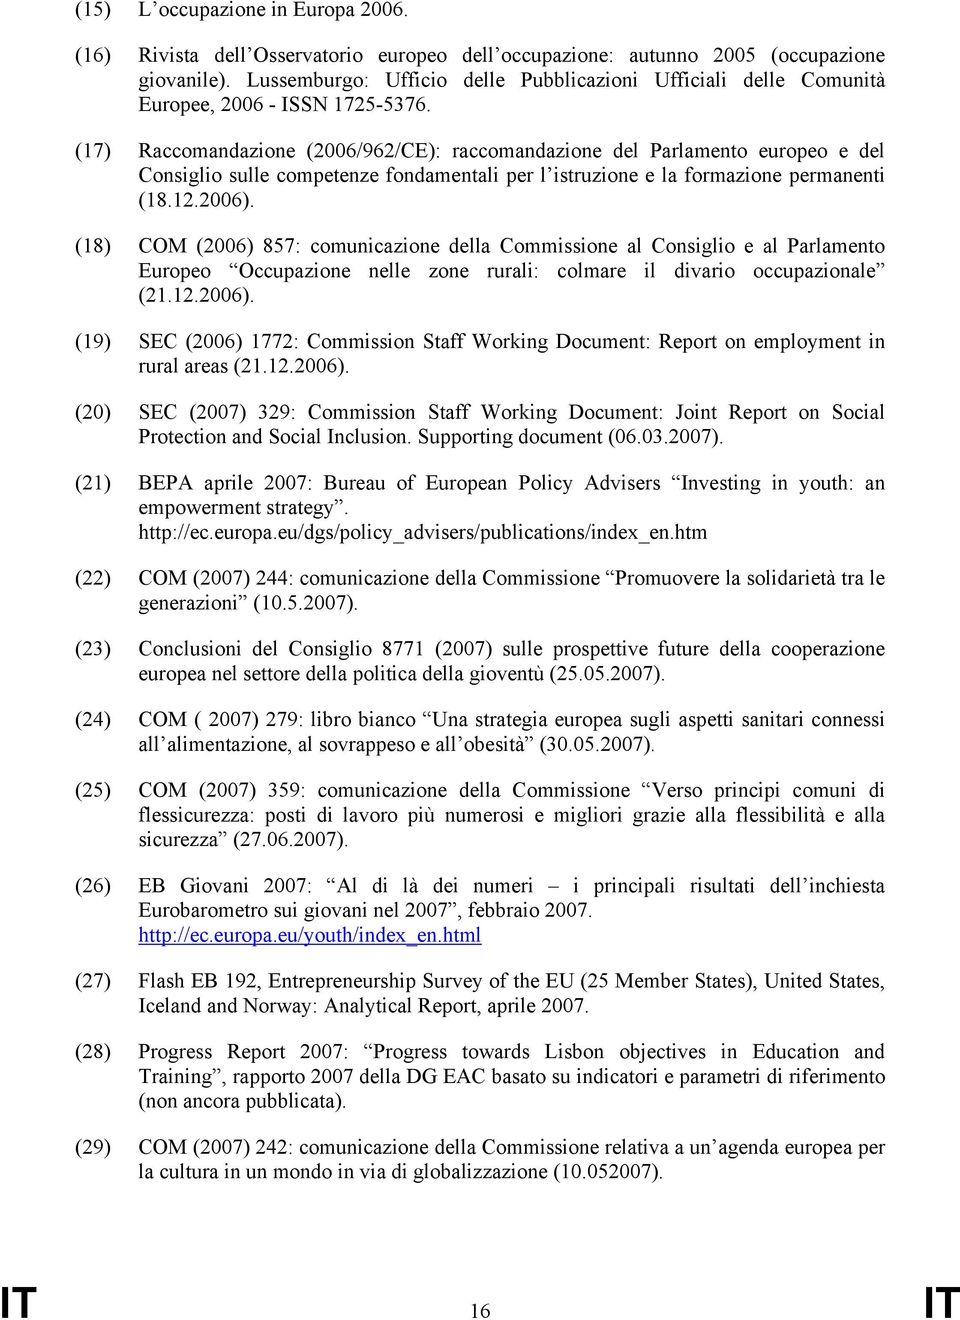 (17) Raccomandazione (2006/962/CE): raccomandazione del Parlamento europeo e del Consiglio sulle competenze fondamentali per l istruzione e la formazione permanenti (18.12.2006).